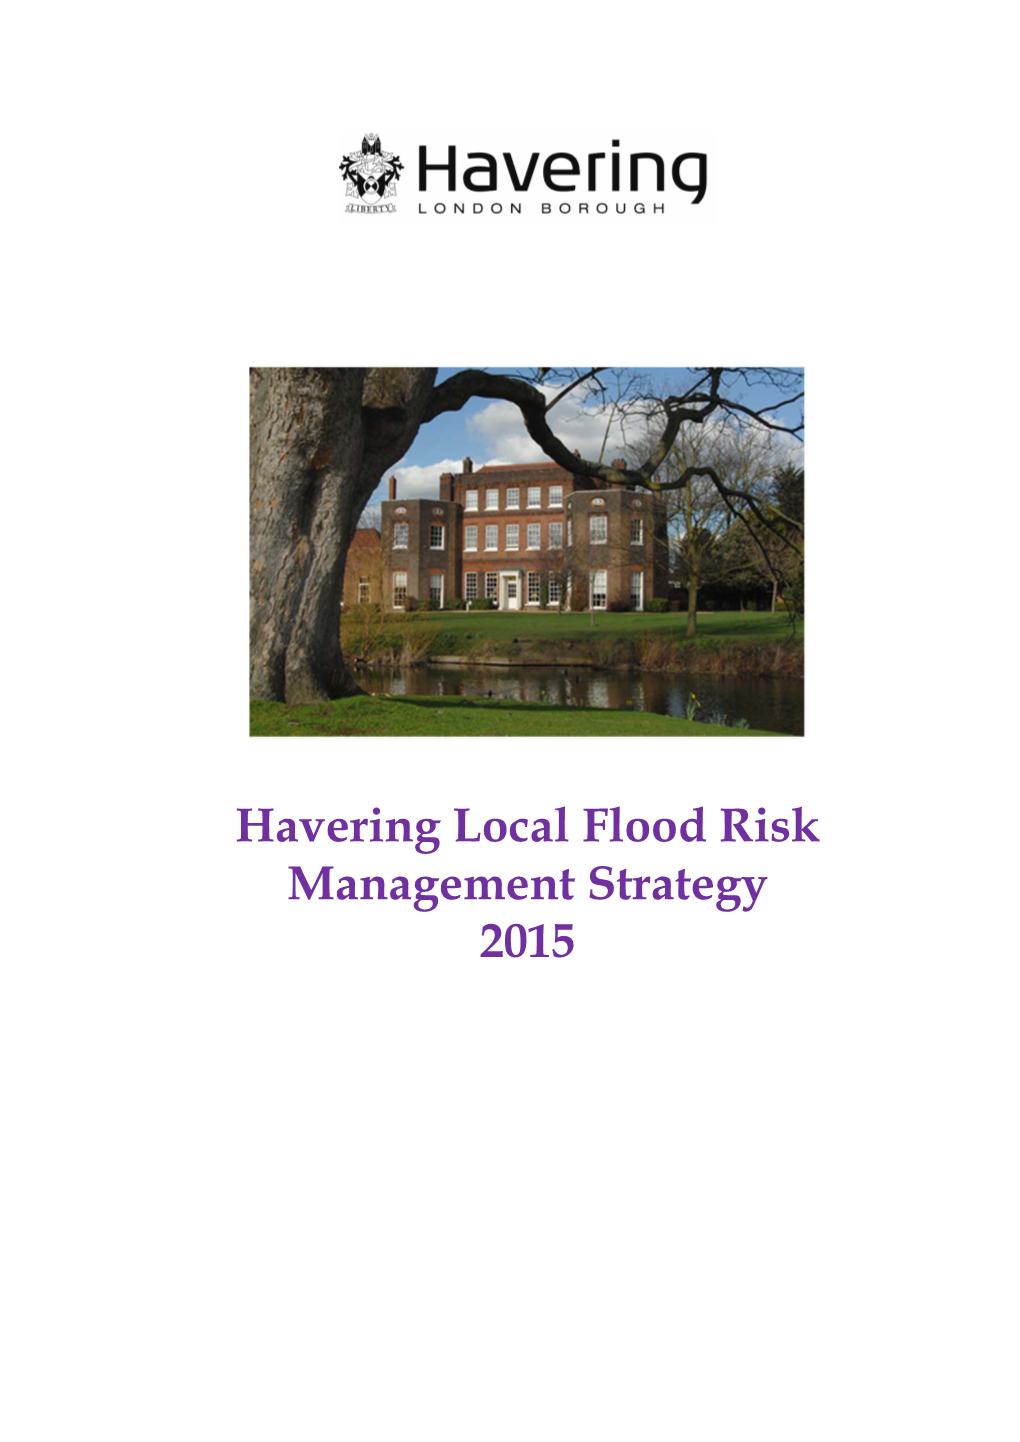 Havering Flood Risk Management Strategy 2015